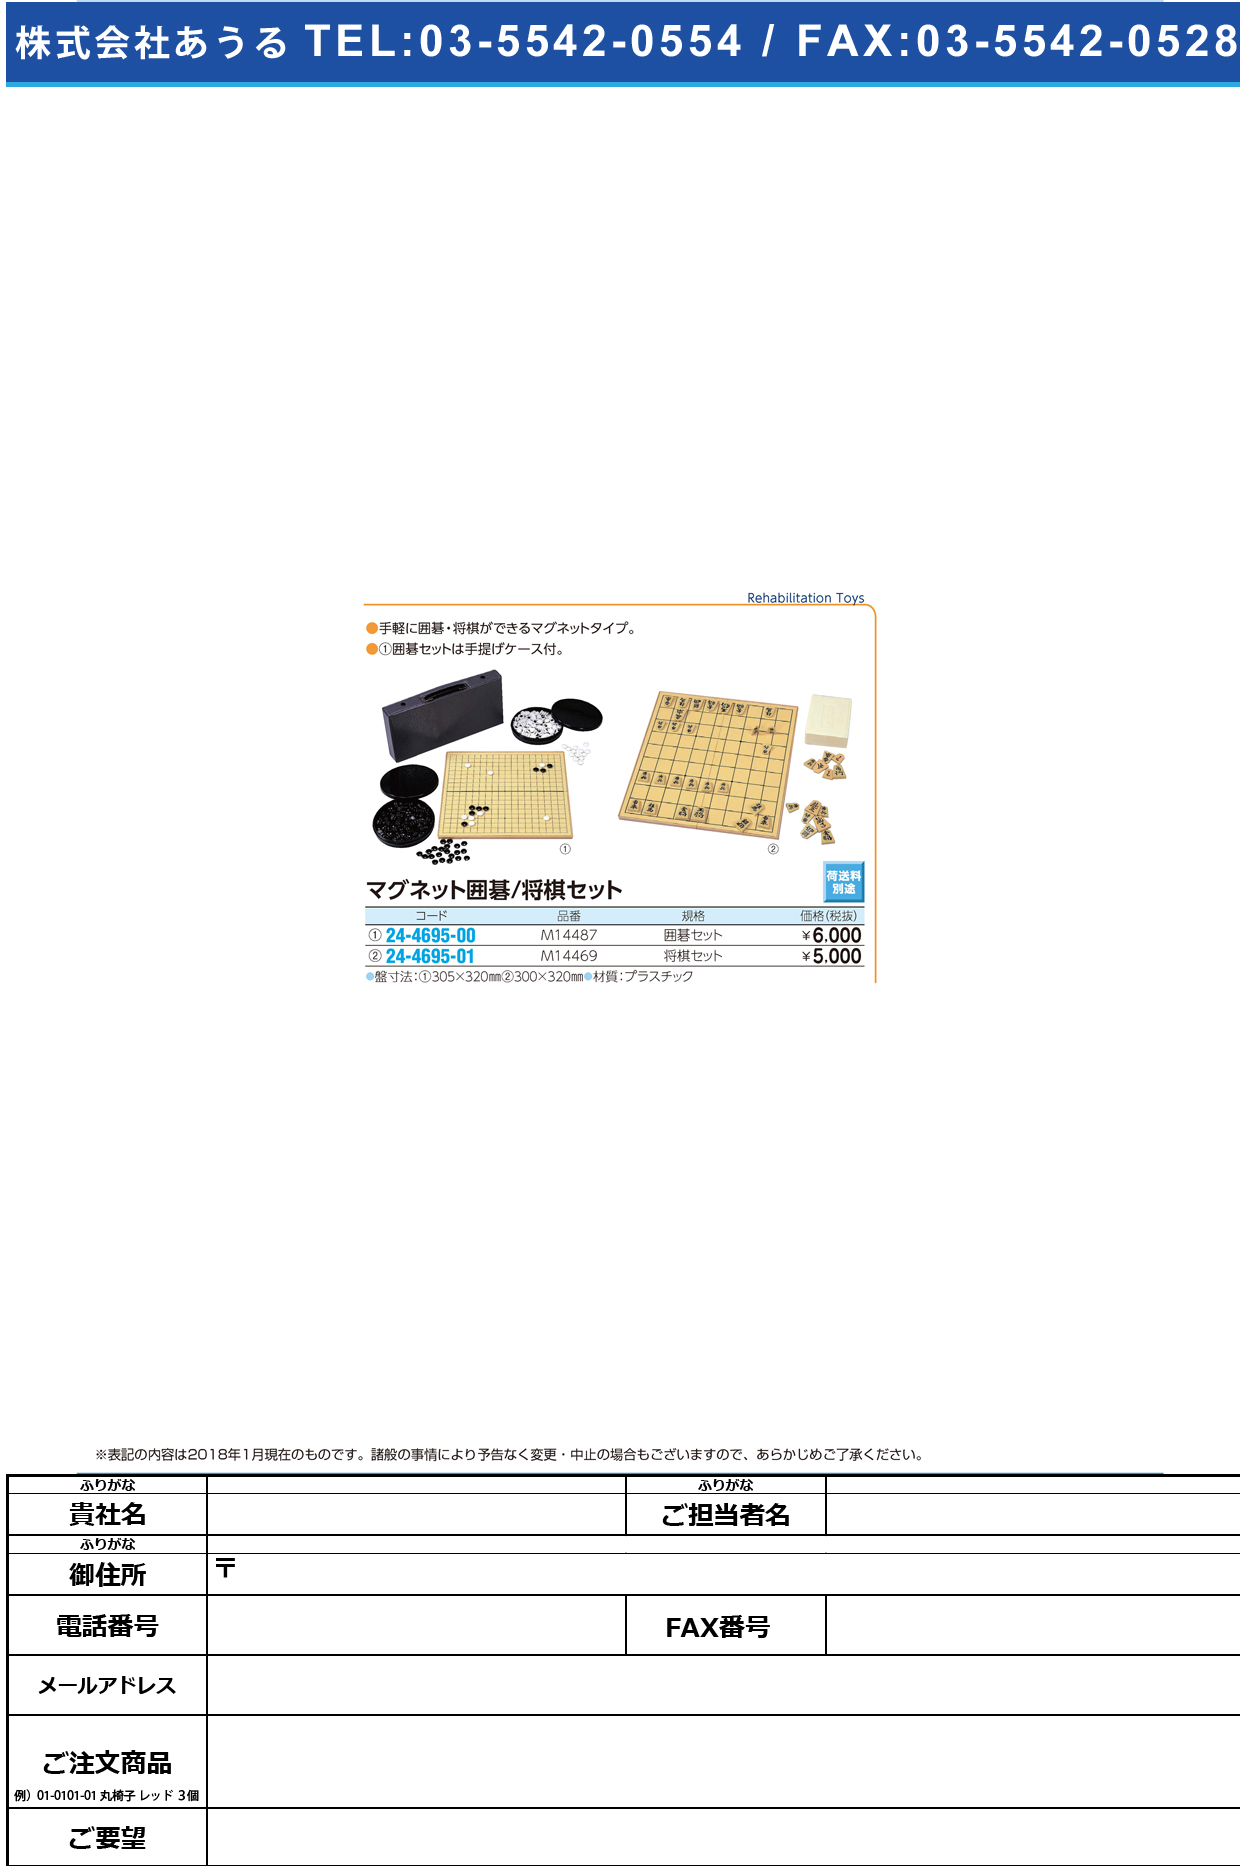 (24-4695-00)マグネット囲碁セット M14487(MG20) ﾏｸﾞﾈｯﾄｲｺﾞｾｯﾄ【1組単位】【2018年カタログ商品】